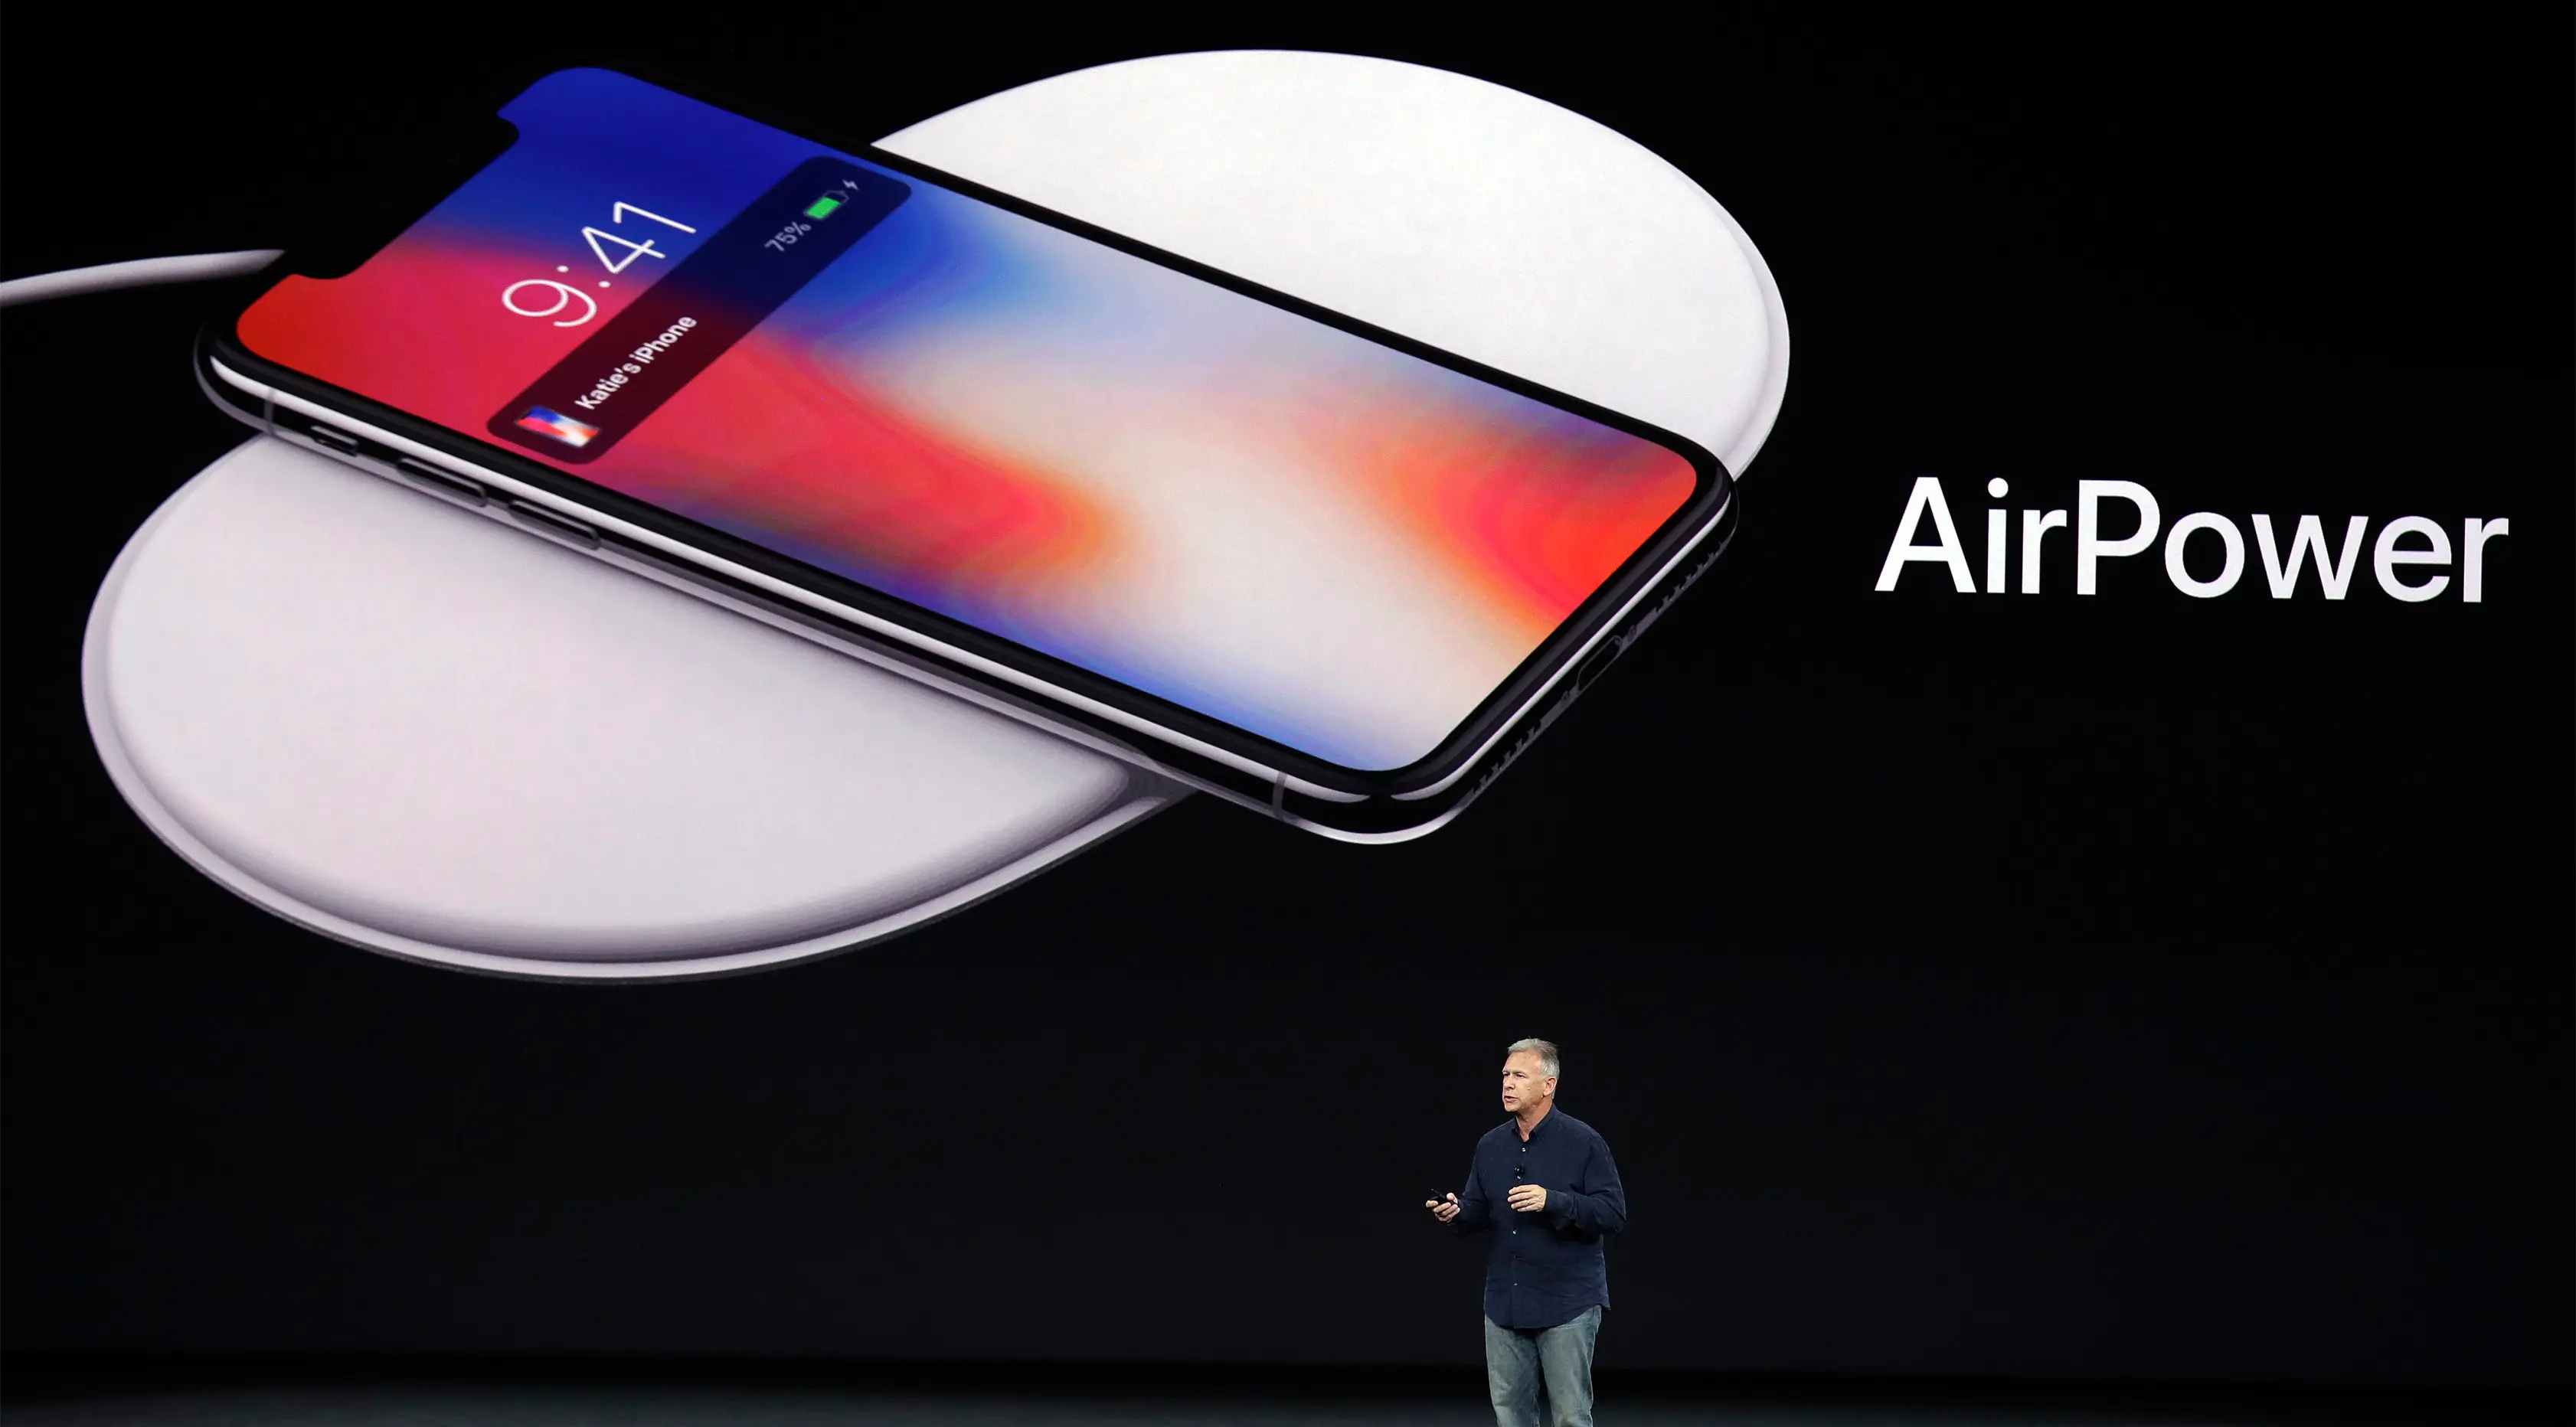 Phil Schiller menjelaskan tampilan iPhone X saat peluncurannya di Steve Jobs Theatre, California, Selasa (12/9). Produk yang dikabarkan akan beredar 3 November 2017 ini dibanderol dengan harga termurah 13 juta rupiah. (AP Photo/Marcio Jose Sanchez)